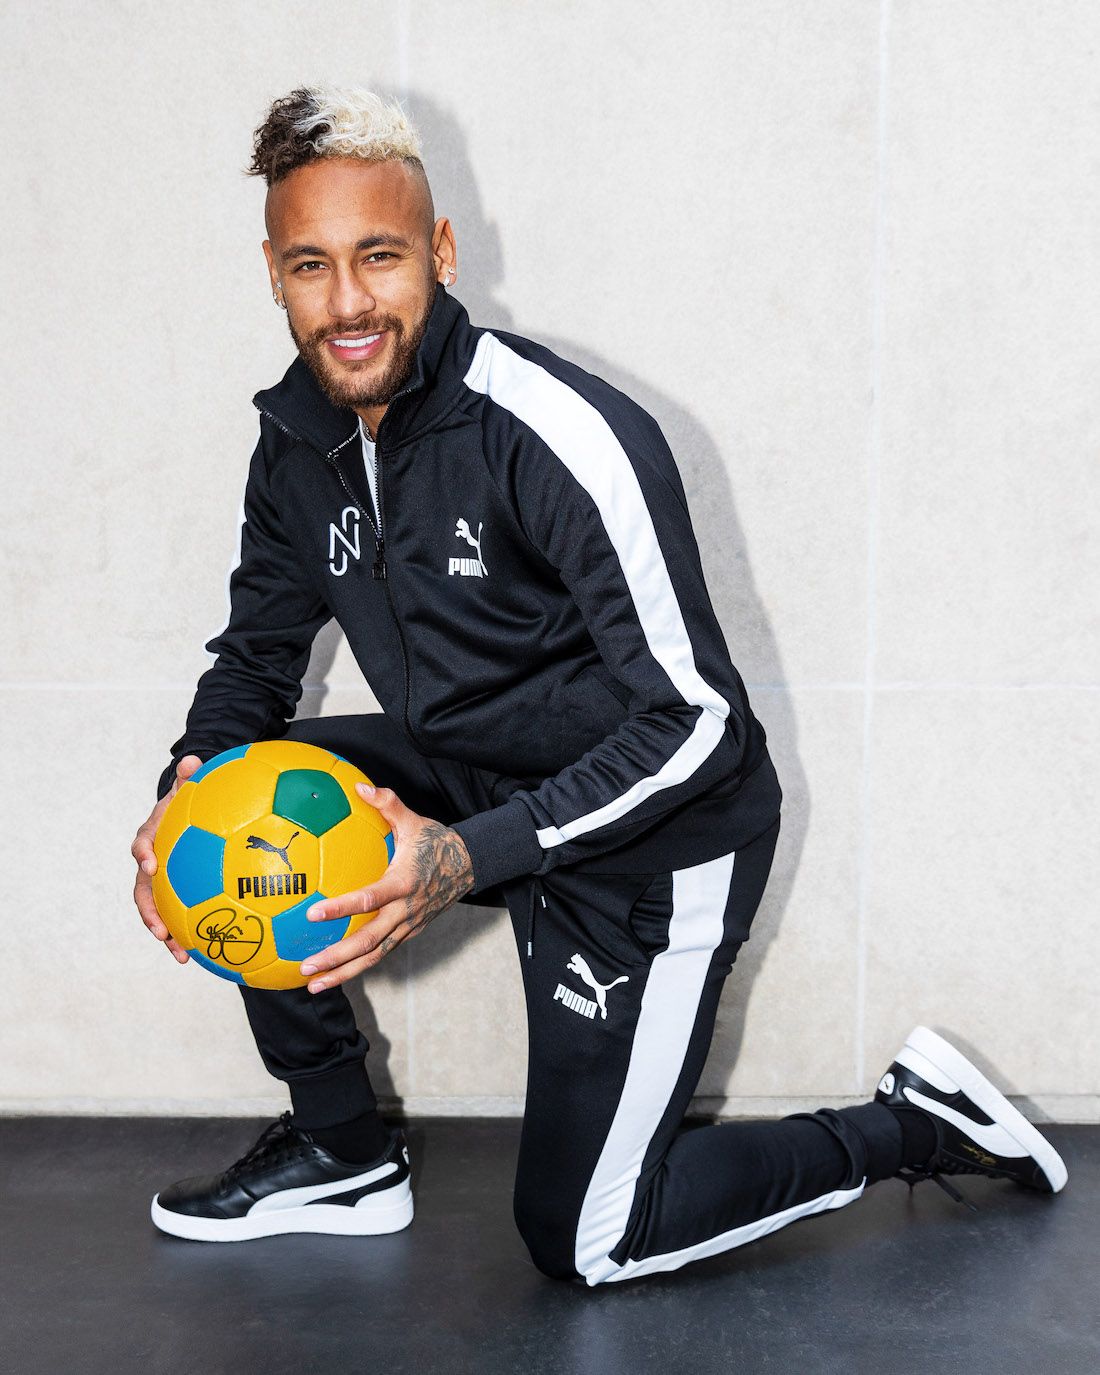 سمك الخنزير It's Official: Neymar Signs with PUMA on Long-Term Deal - Sneaker ... سمك الخنزير